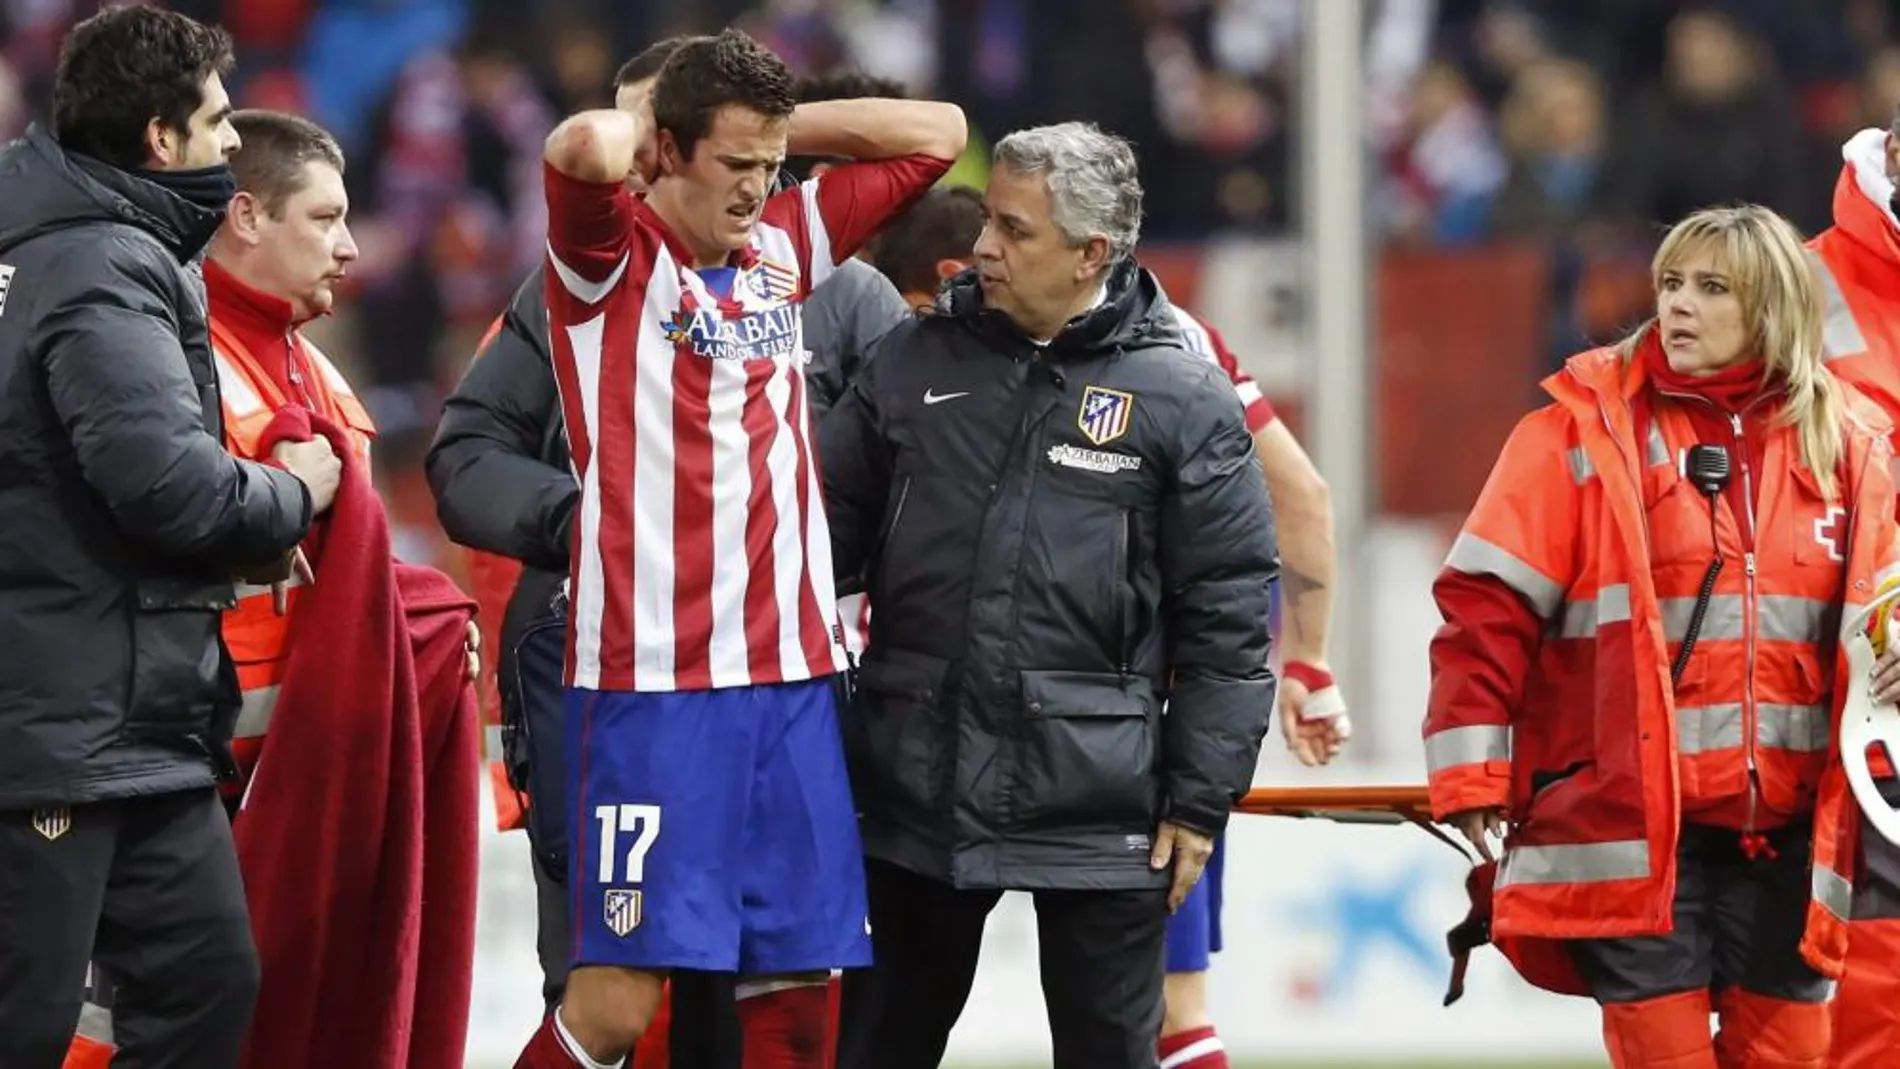 El centrocampista del Atlético Manquillo se retira del terreno de juego tras sufrir una brutal caída con el cuello